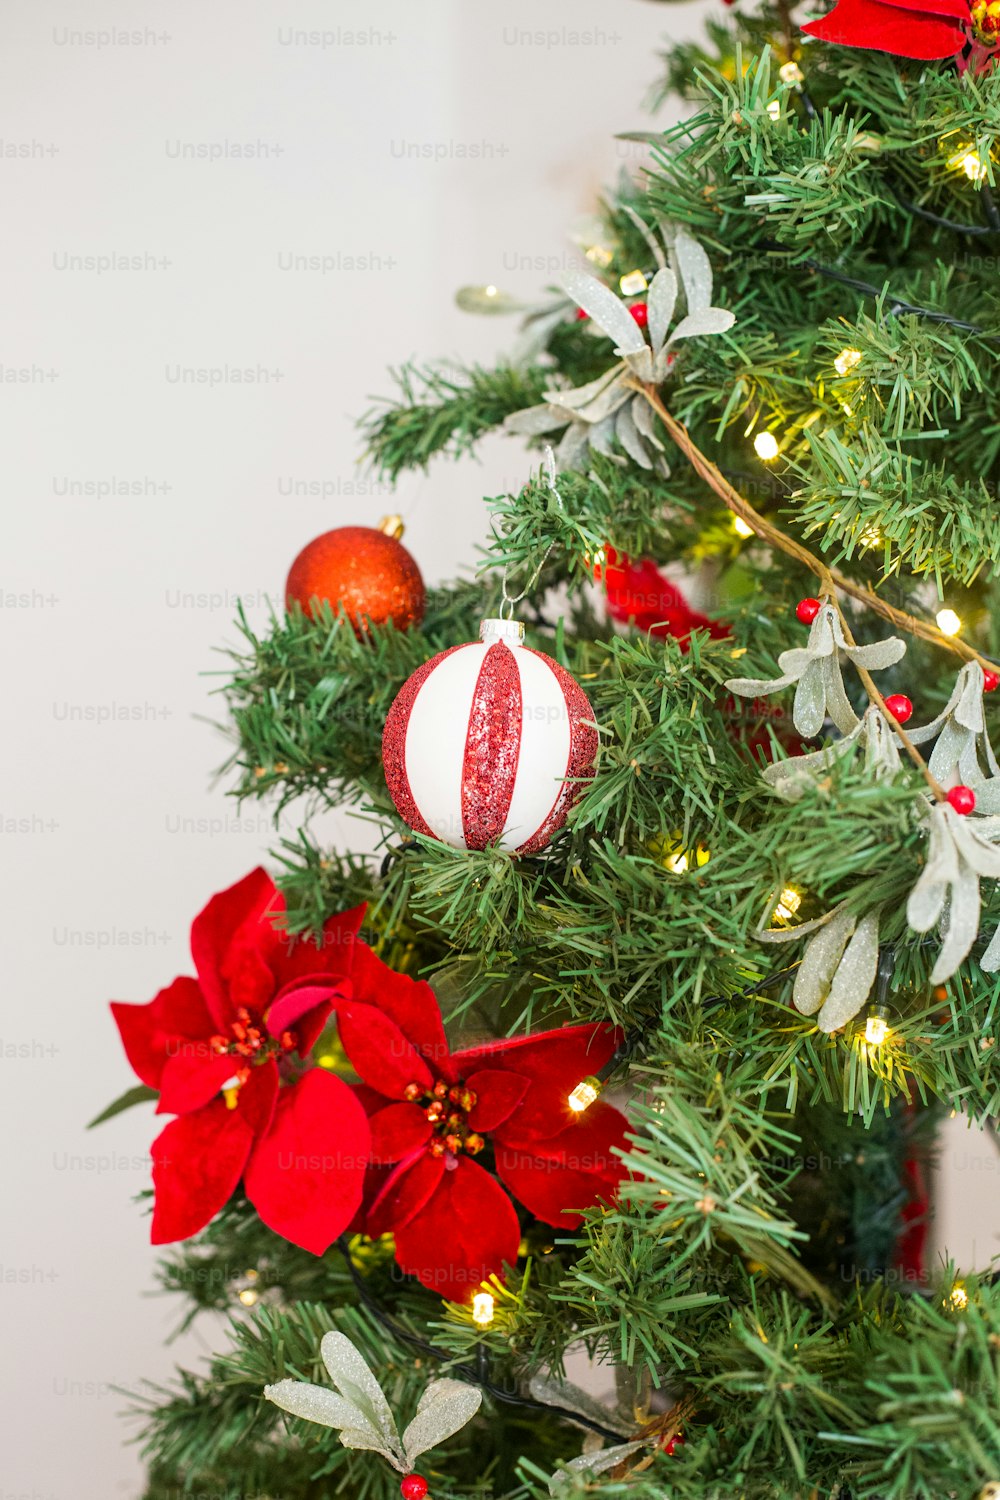 ein Weihnachtsbaum, der mit roten und weißen Ornamenten geschmückt ist